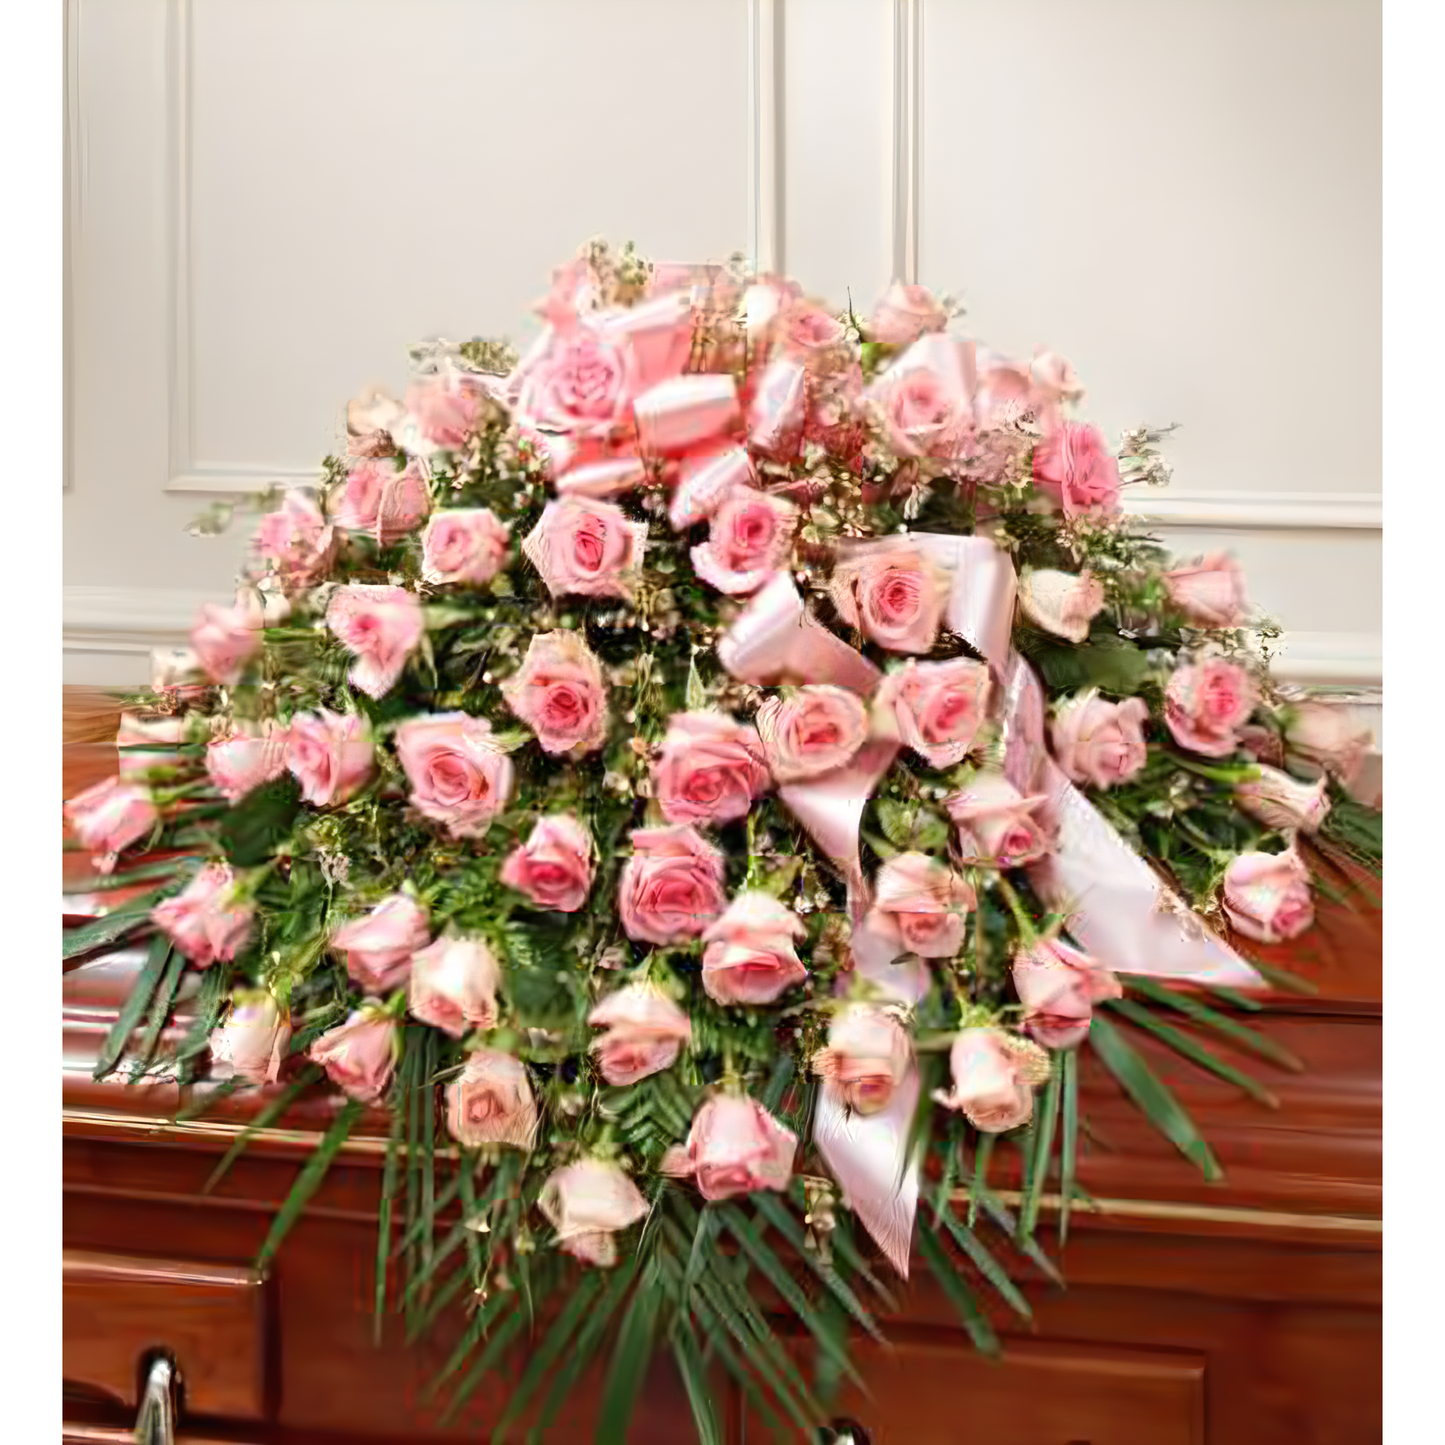 Cherished Memories Rose Half Casket Cover - Pink - Funeral > Casket Sprays